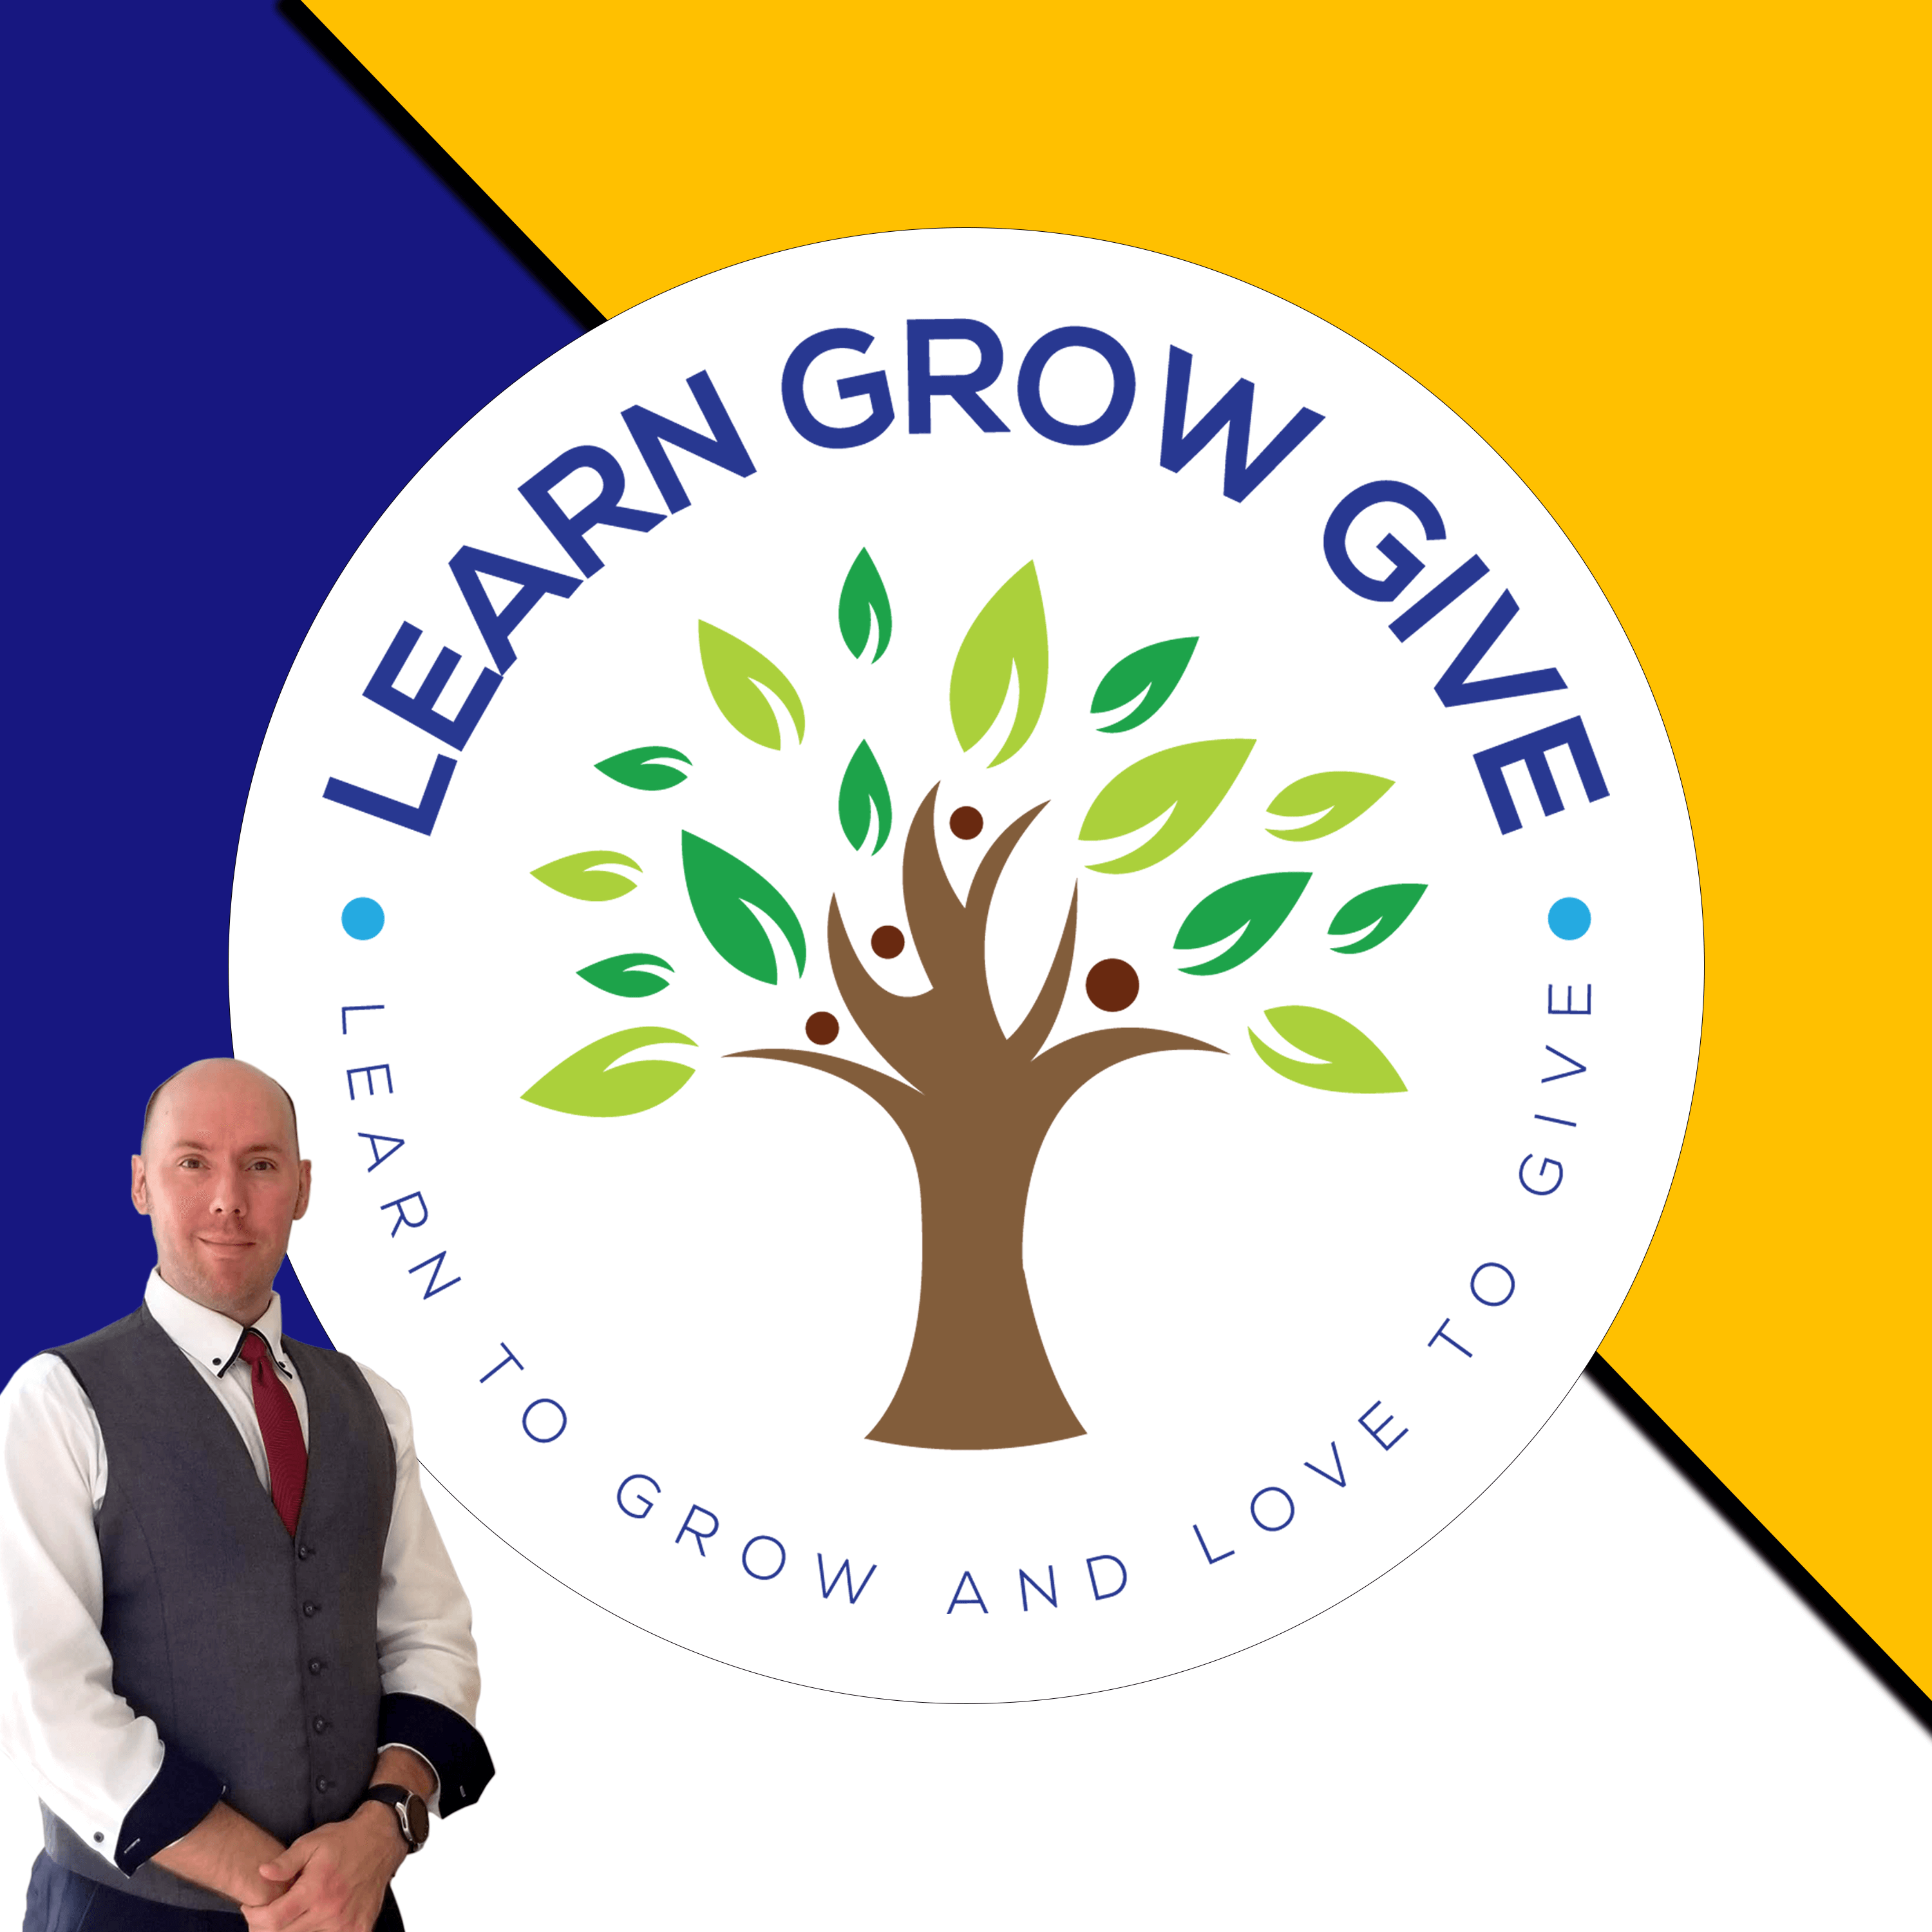 Learn Grow Give